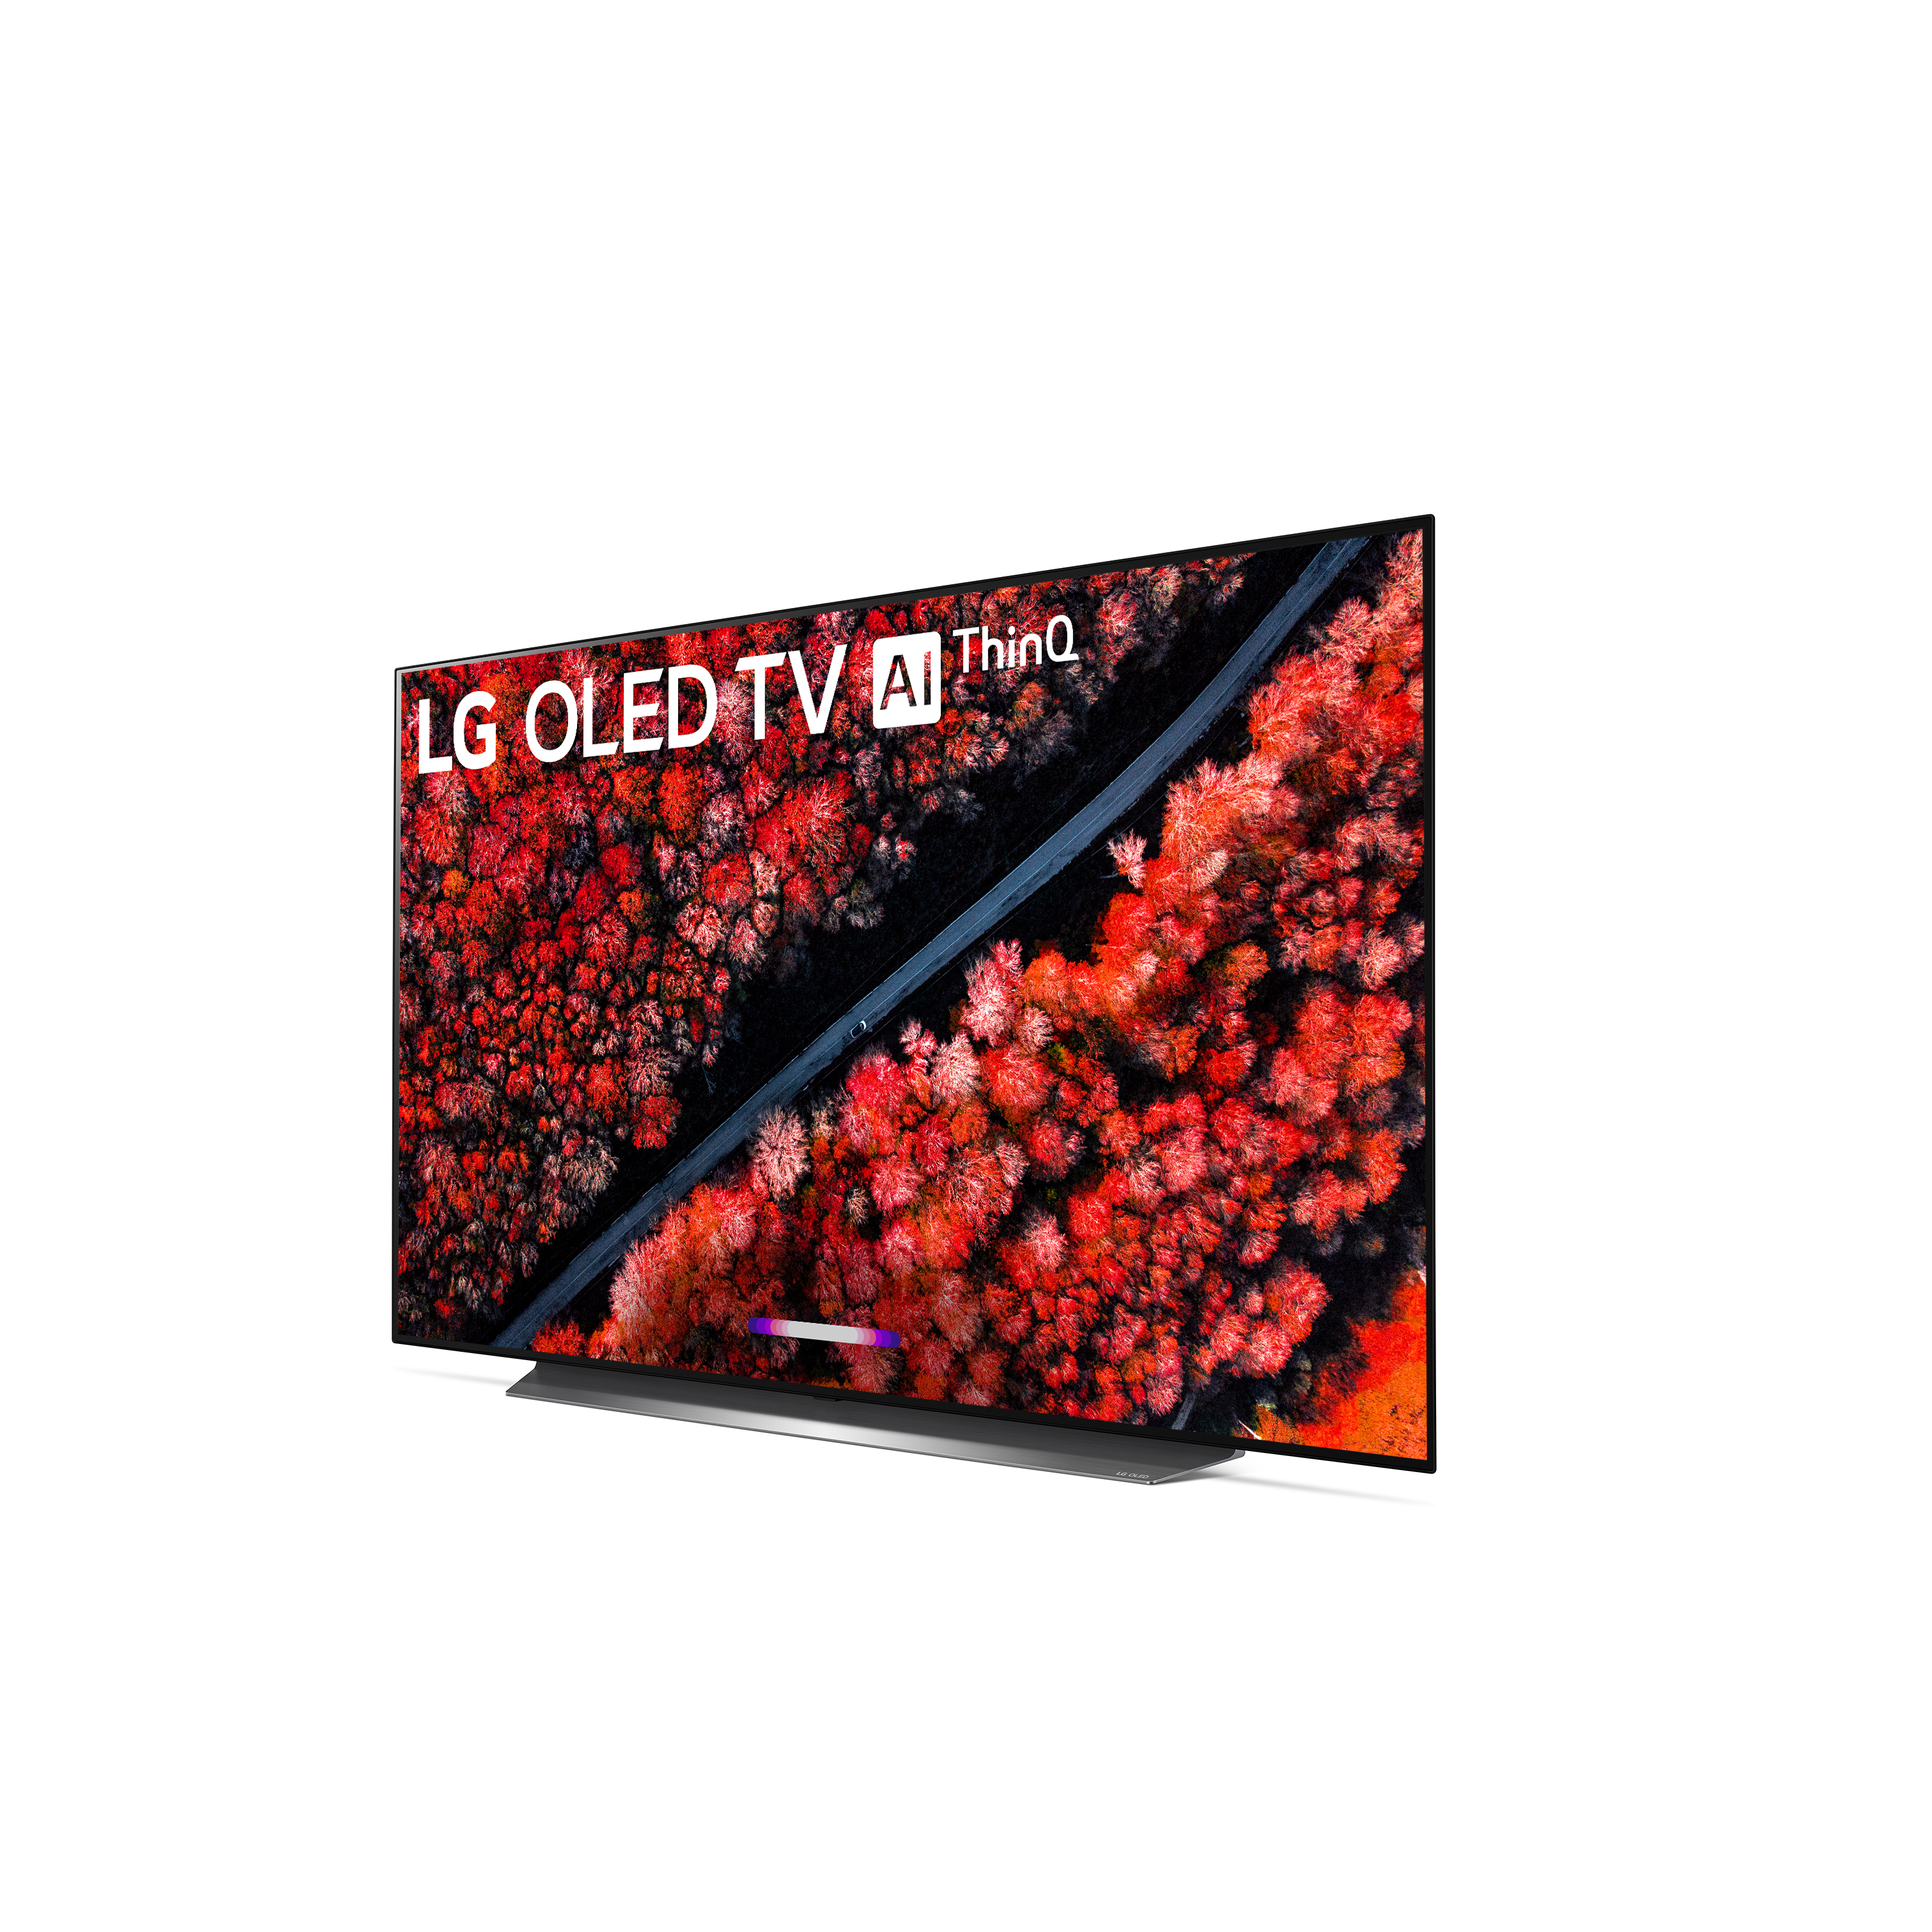 LG 55" Class OLED C9 Series 4K (2160P) Smart Ultra HD HDR TV - OLED55C9PUA 2019 Model - image 4 of 17